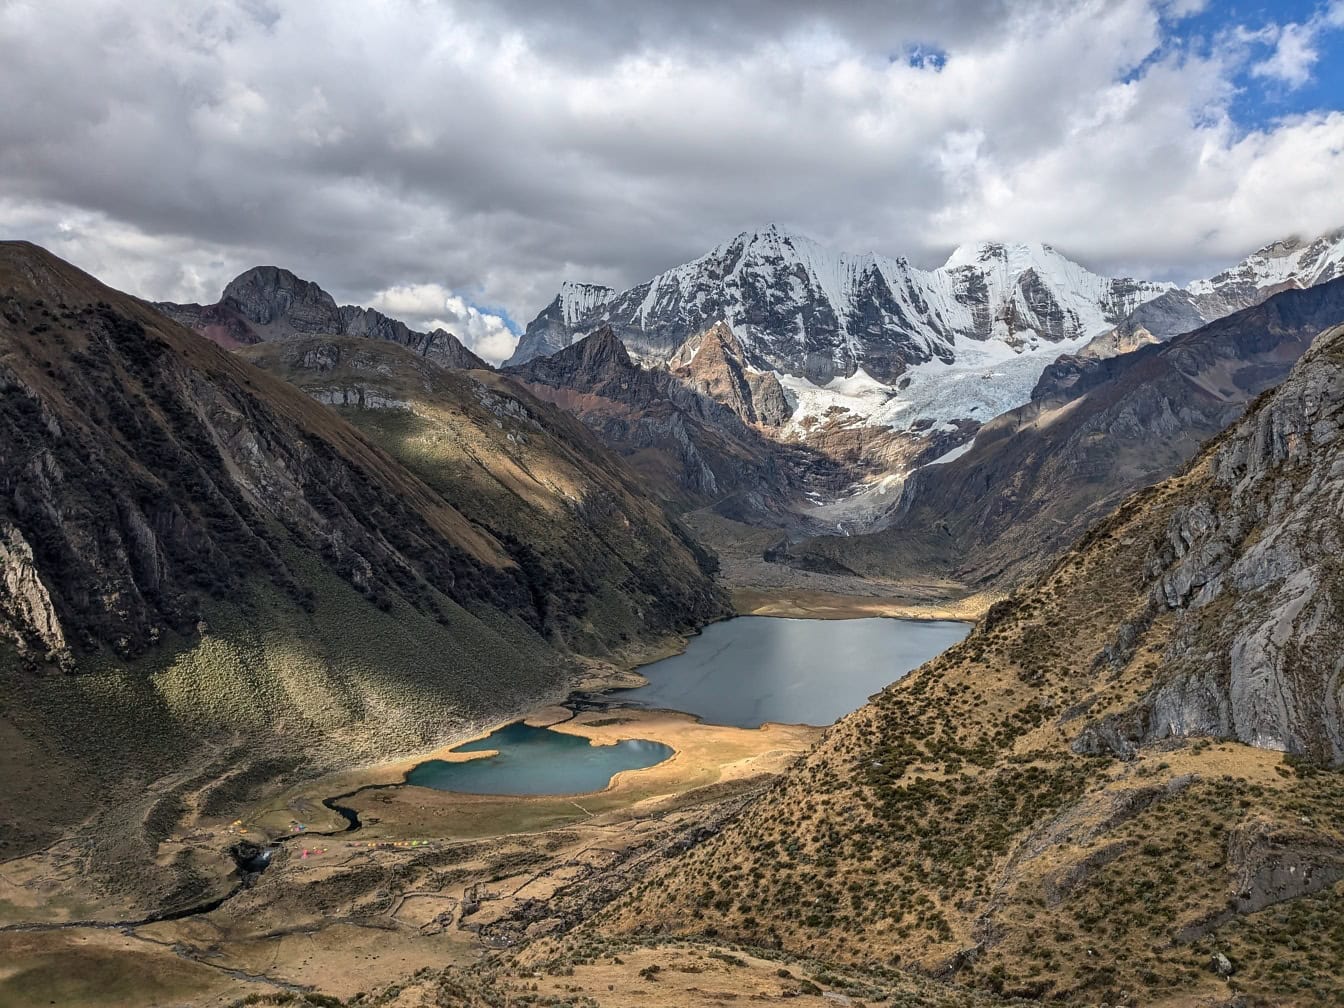 ทิวทัศน์มุมกว้างของทะเลสาบที่ล้อมรอบด้วยภูเขาที่ Cordillera Huahuash เทือกเขาในเทือกเขาแอนดีสของเปรู